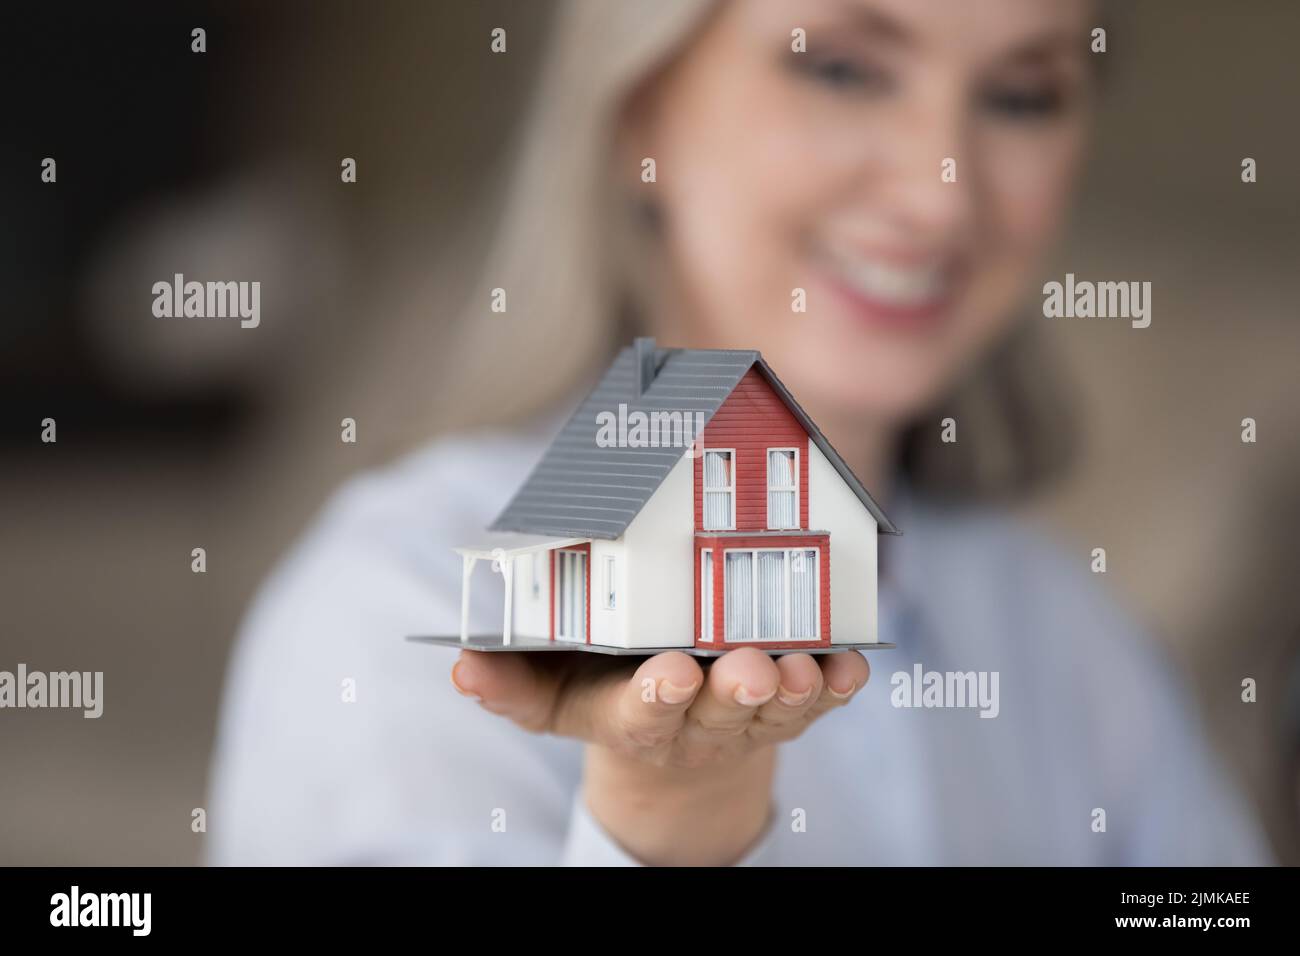 Happy realtor woman holding tiny house model on hand Stock Photo